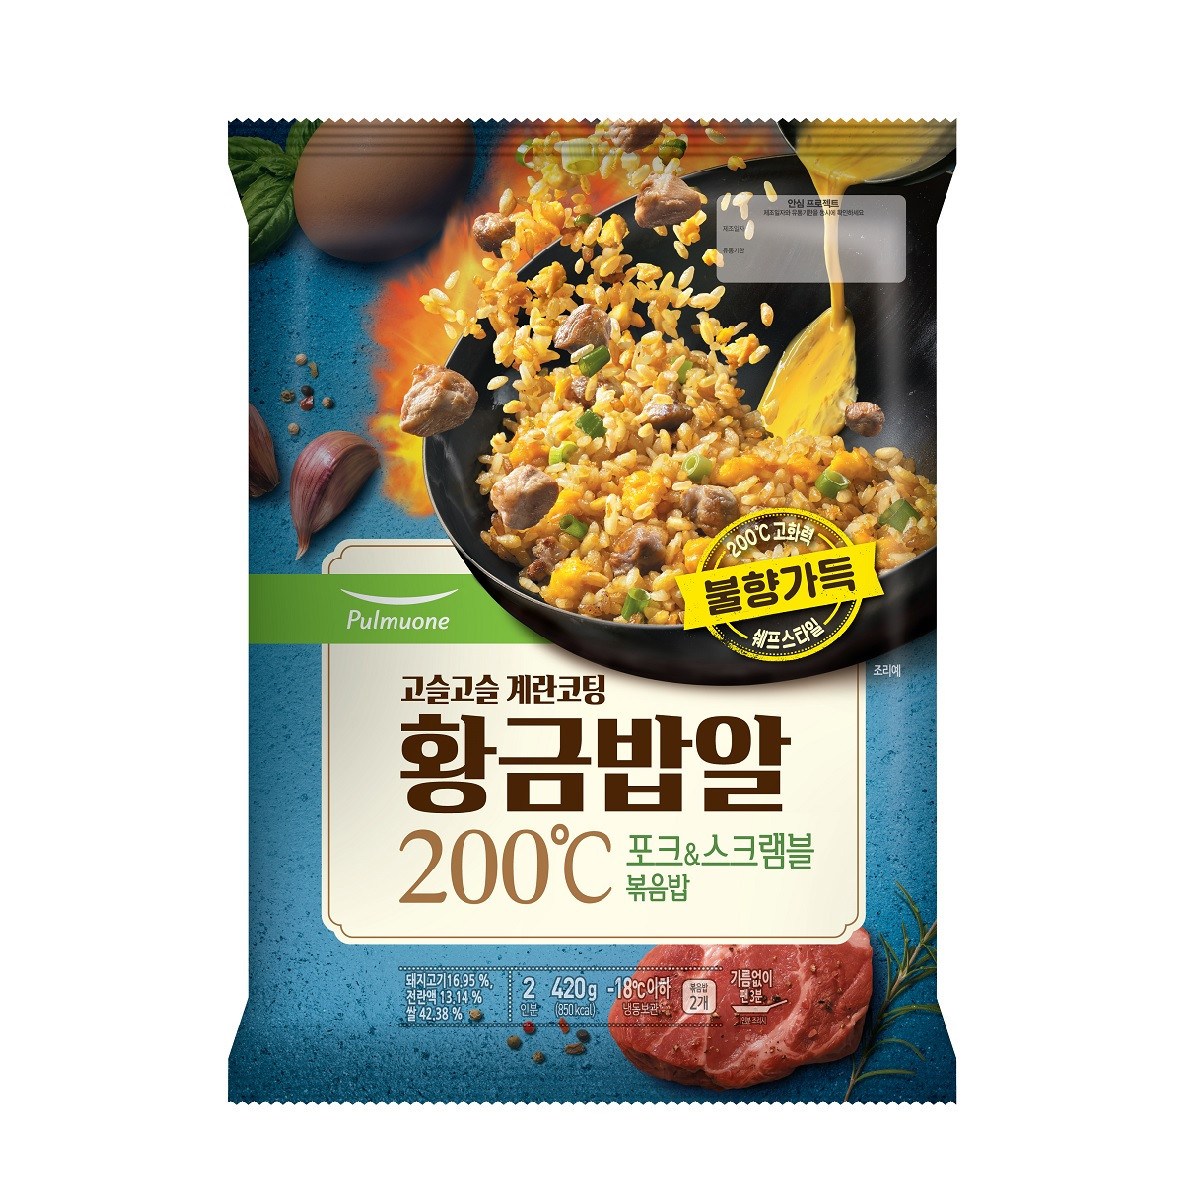 ★아이스박스★풀무원 황금밥알 200℃ 포크스크램블, 단일상품